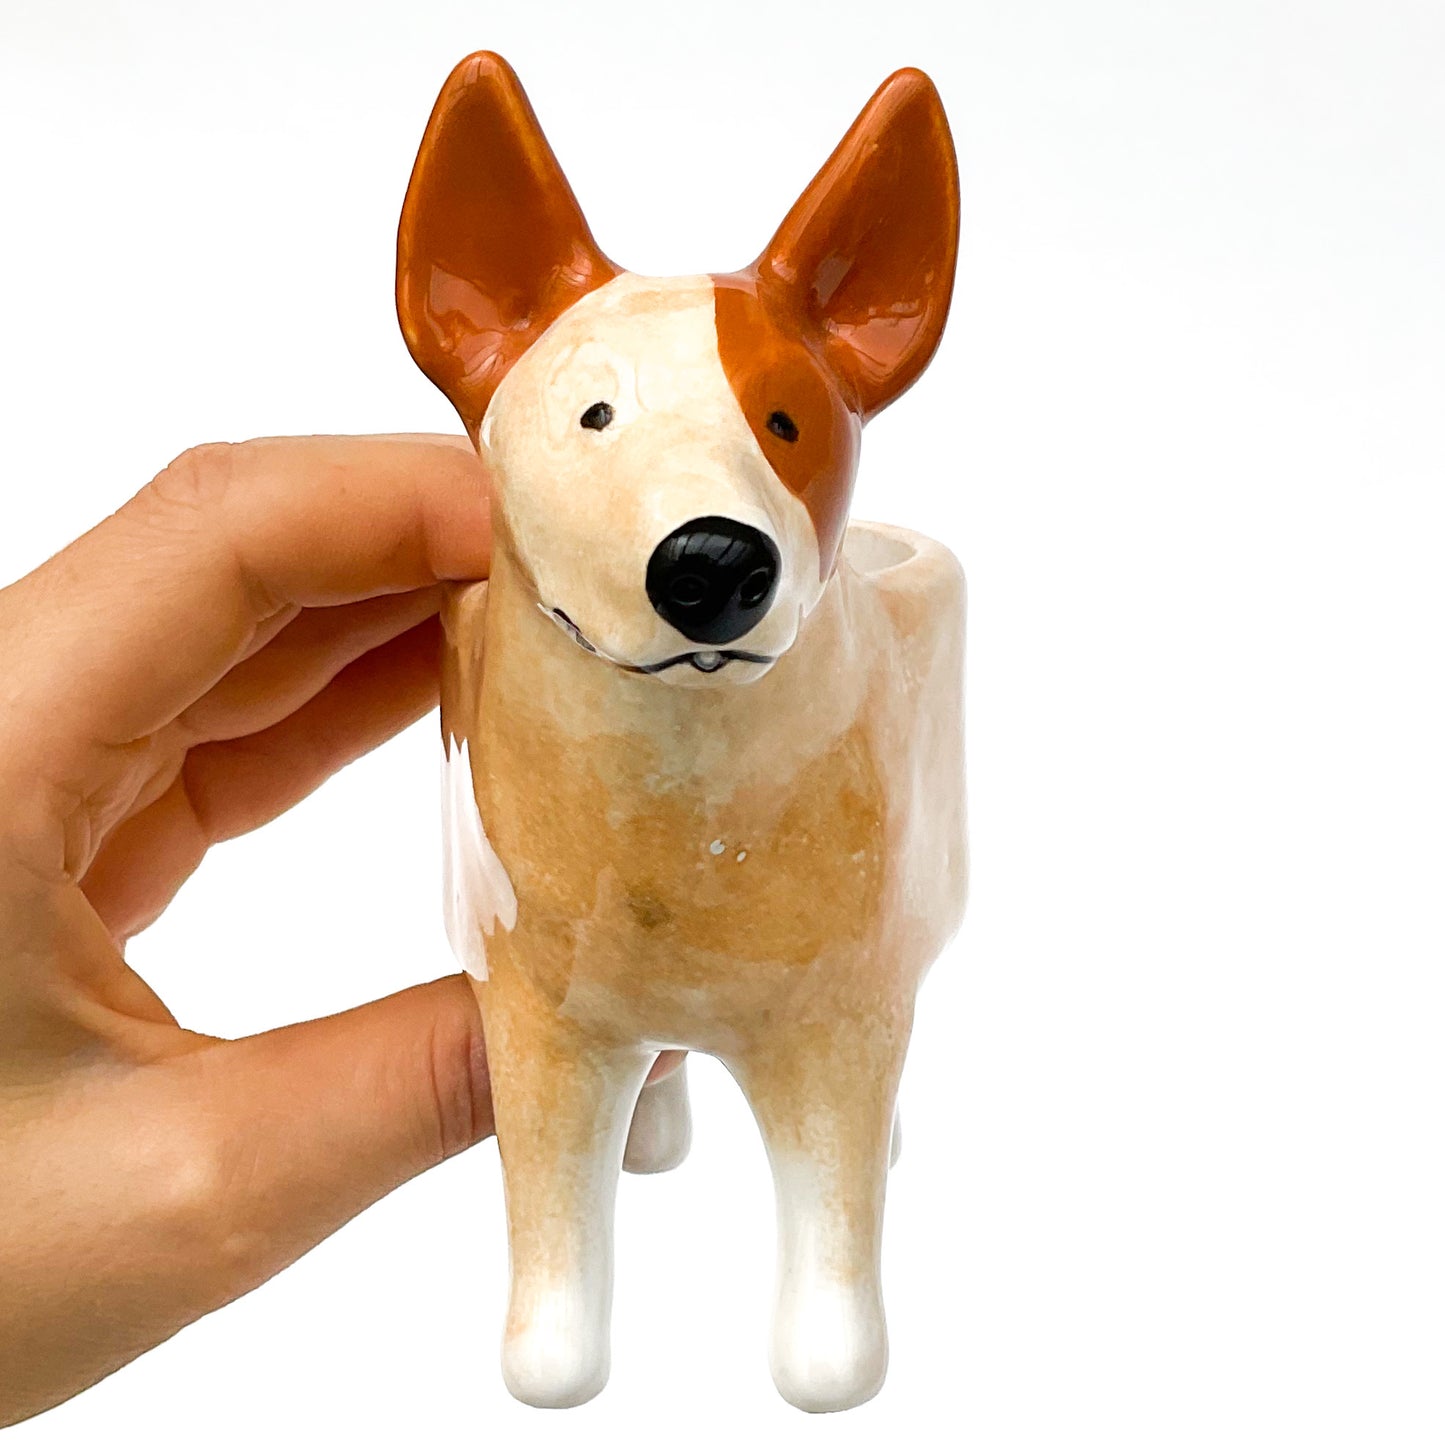 Red Heeler Dog Planter - Ceramic Dog Plant Pot